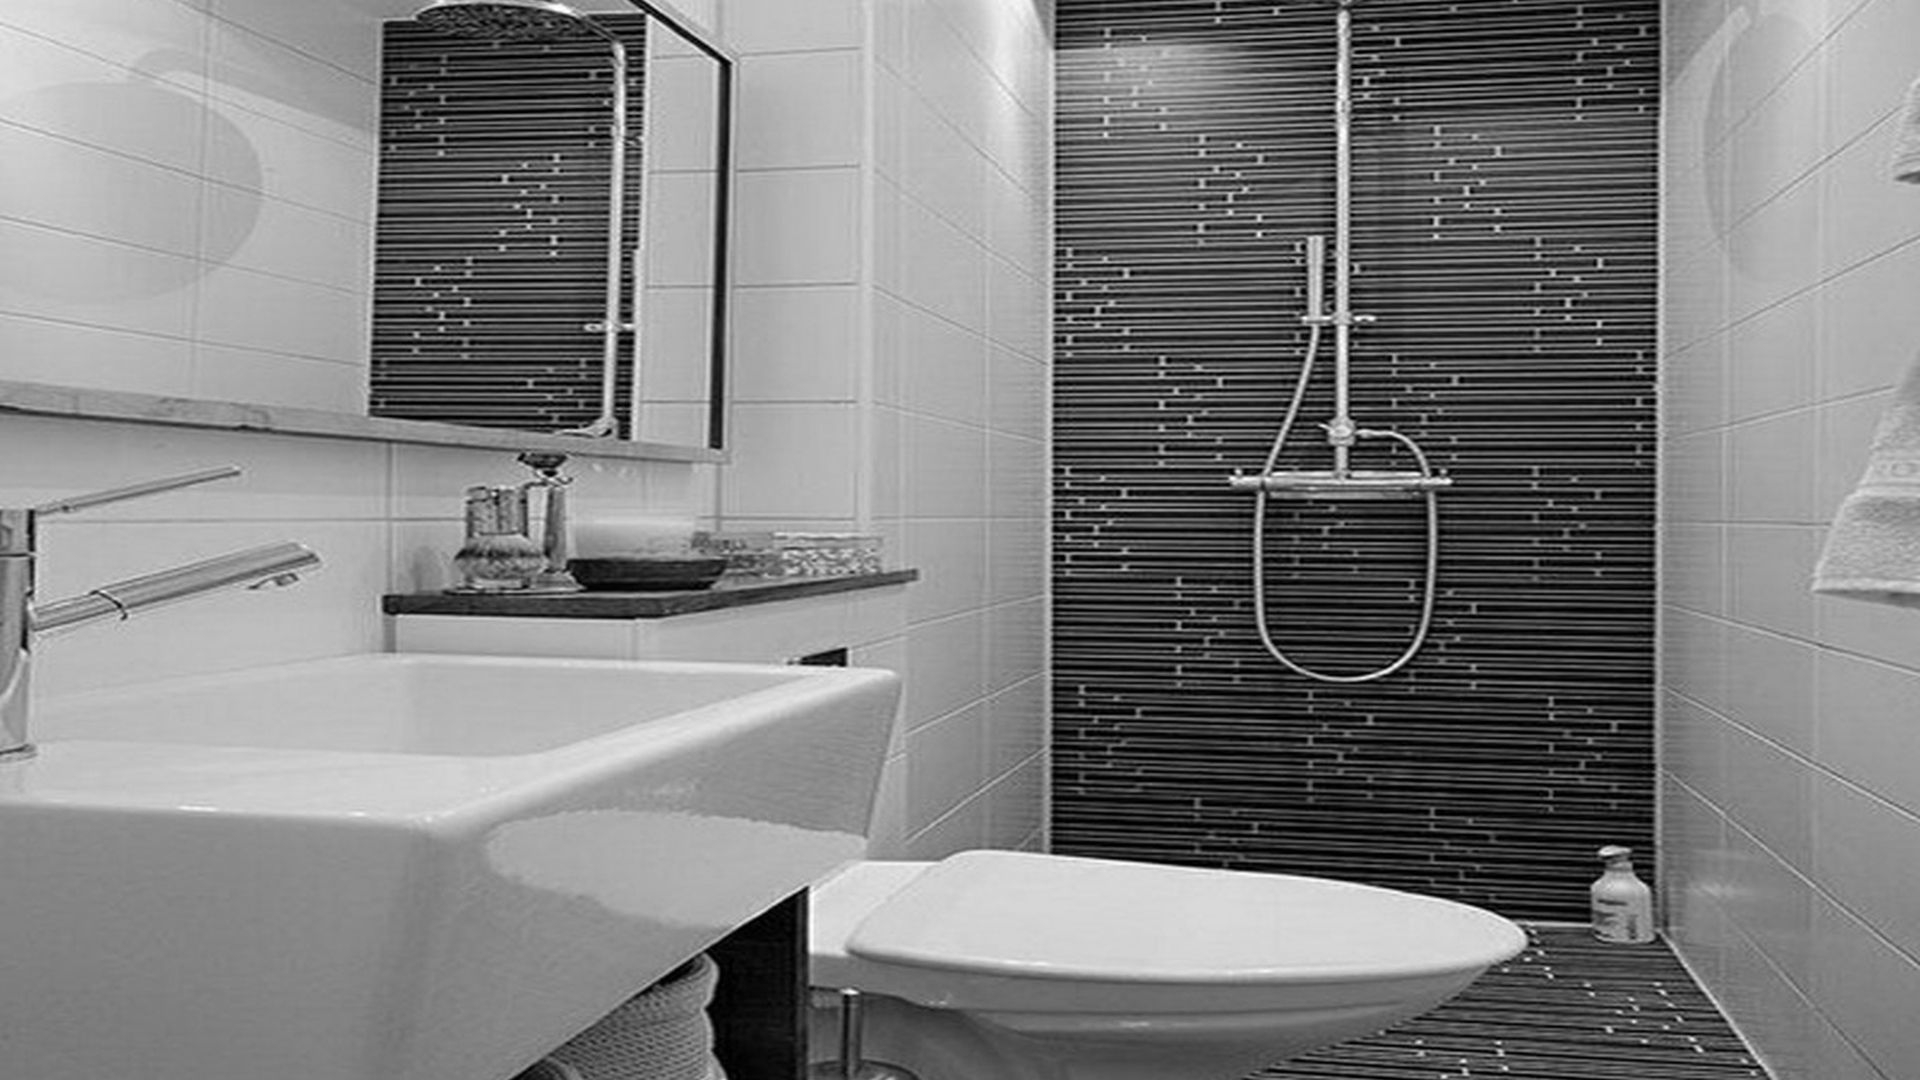 Красивый дизайн ванной комнаты